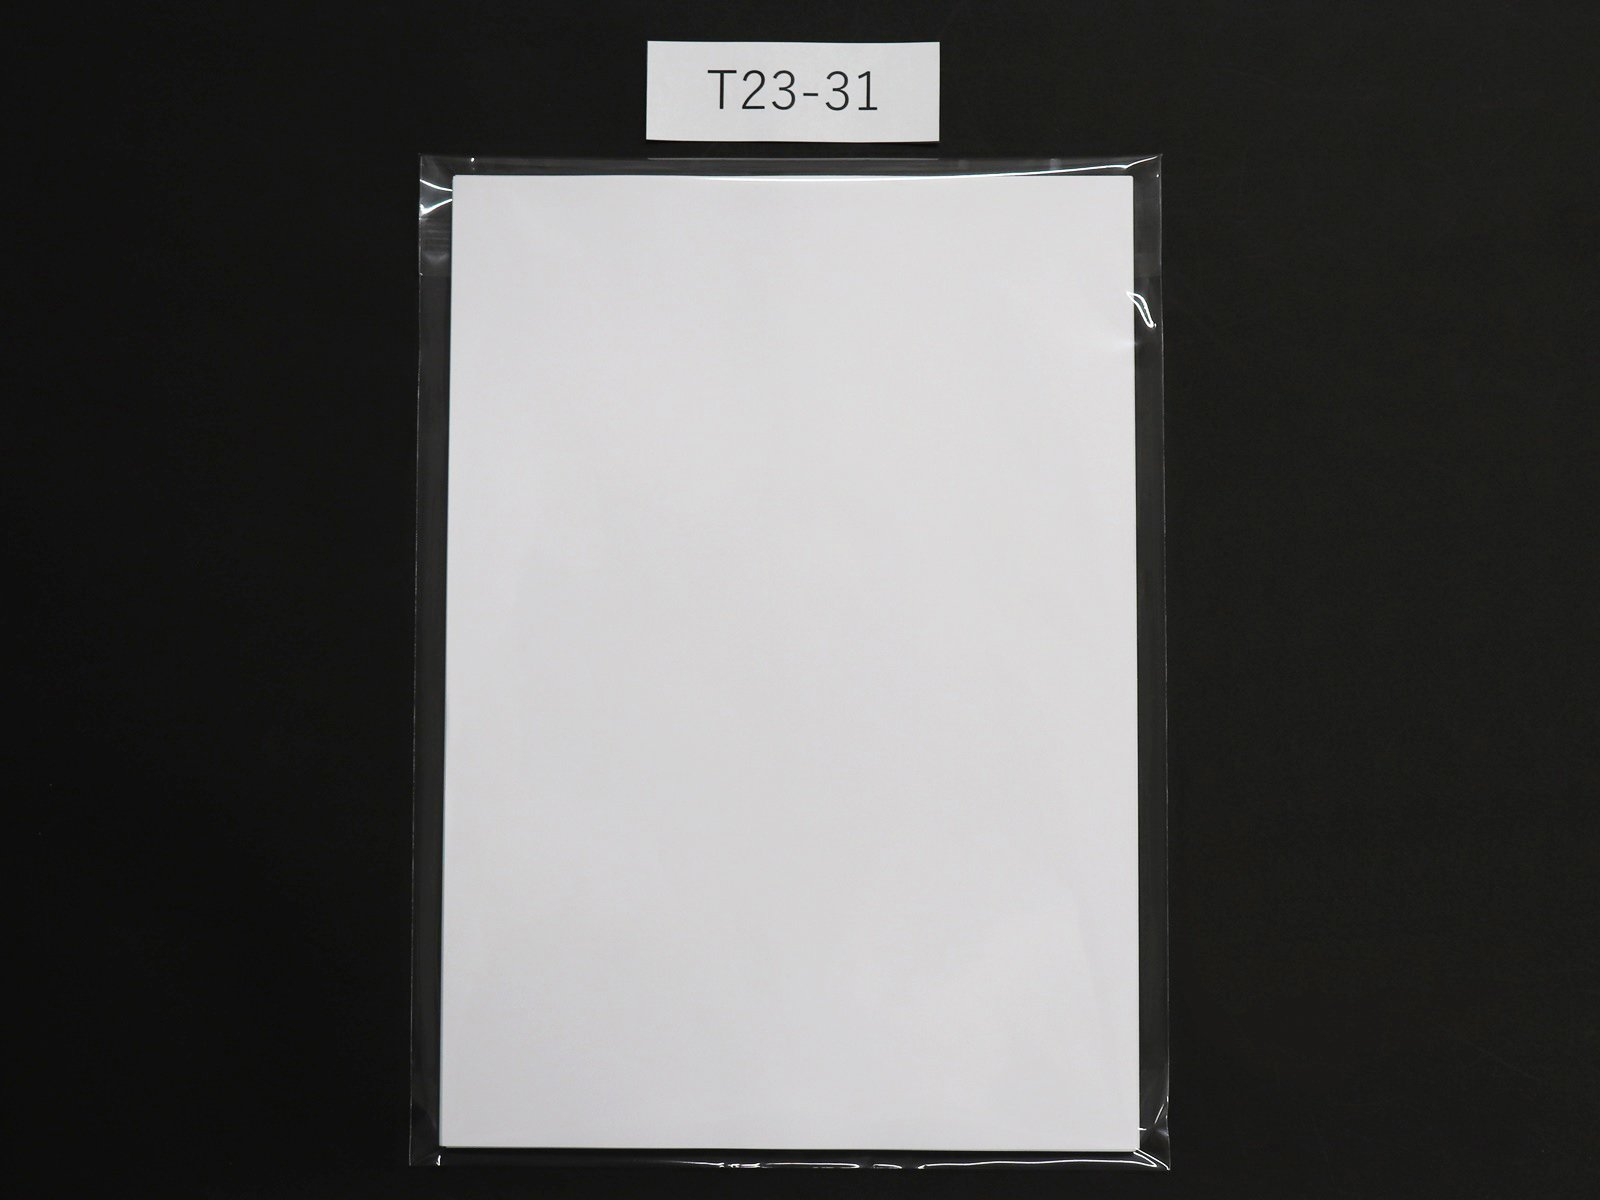 A4コピー用紙50枚を230m幅の袋（T23-31（T-A-4ワイド））に入れた状態